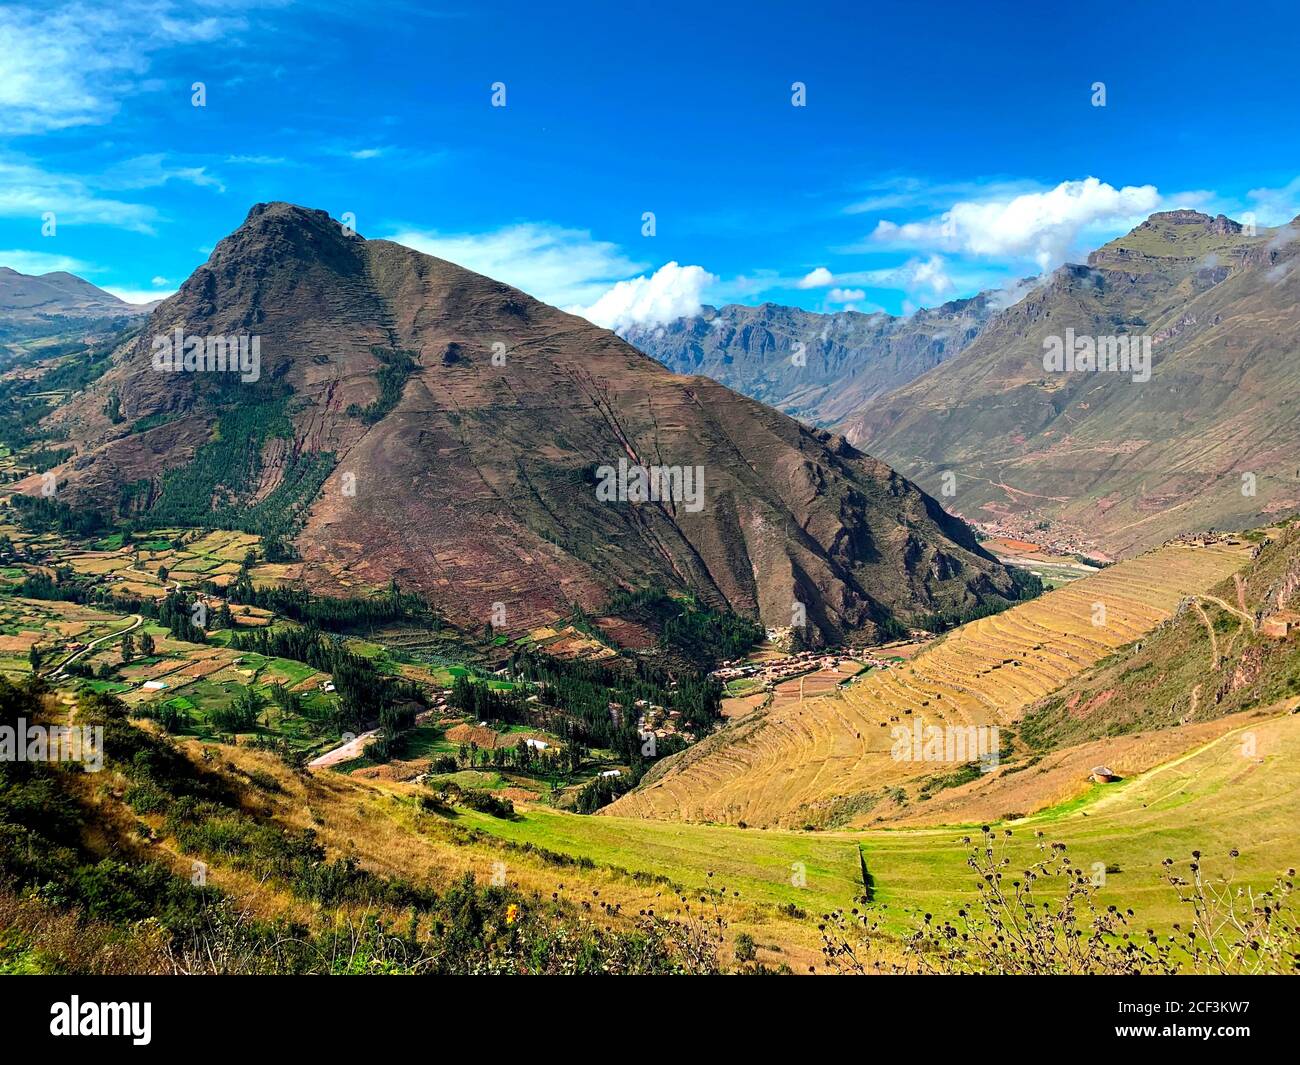 Das heilige Tal der Inkas in Peru. Urubamba Tal. El Valle Sagrado. Grüne landwirtschaftliche Terrassen. Terrassenförmige Felder Andenes. Andenlandschaft Stockfoto